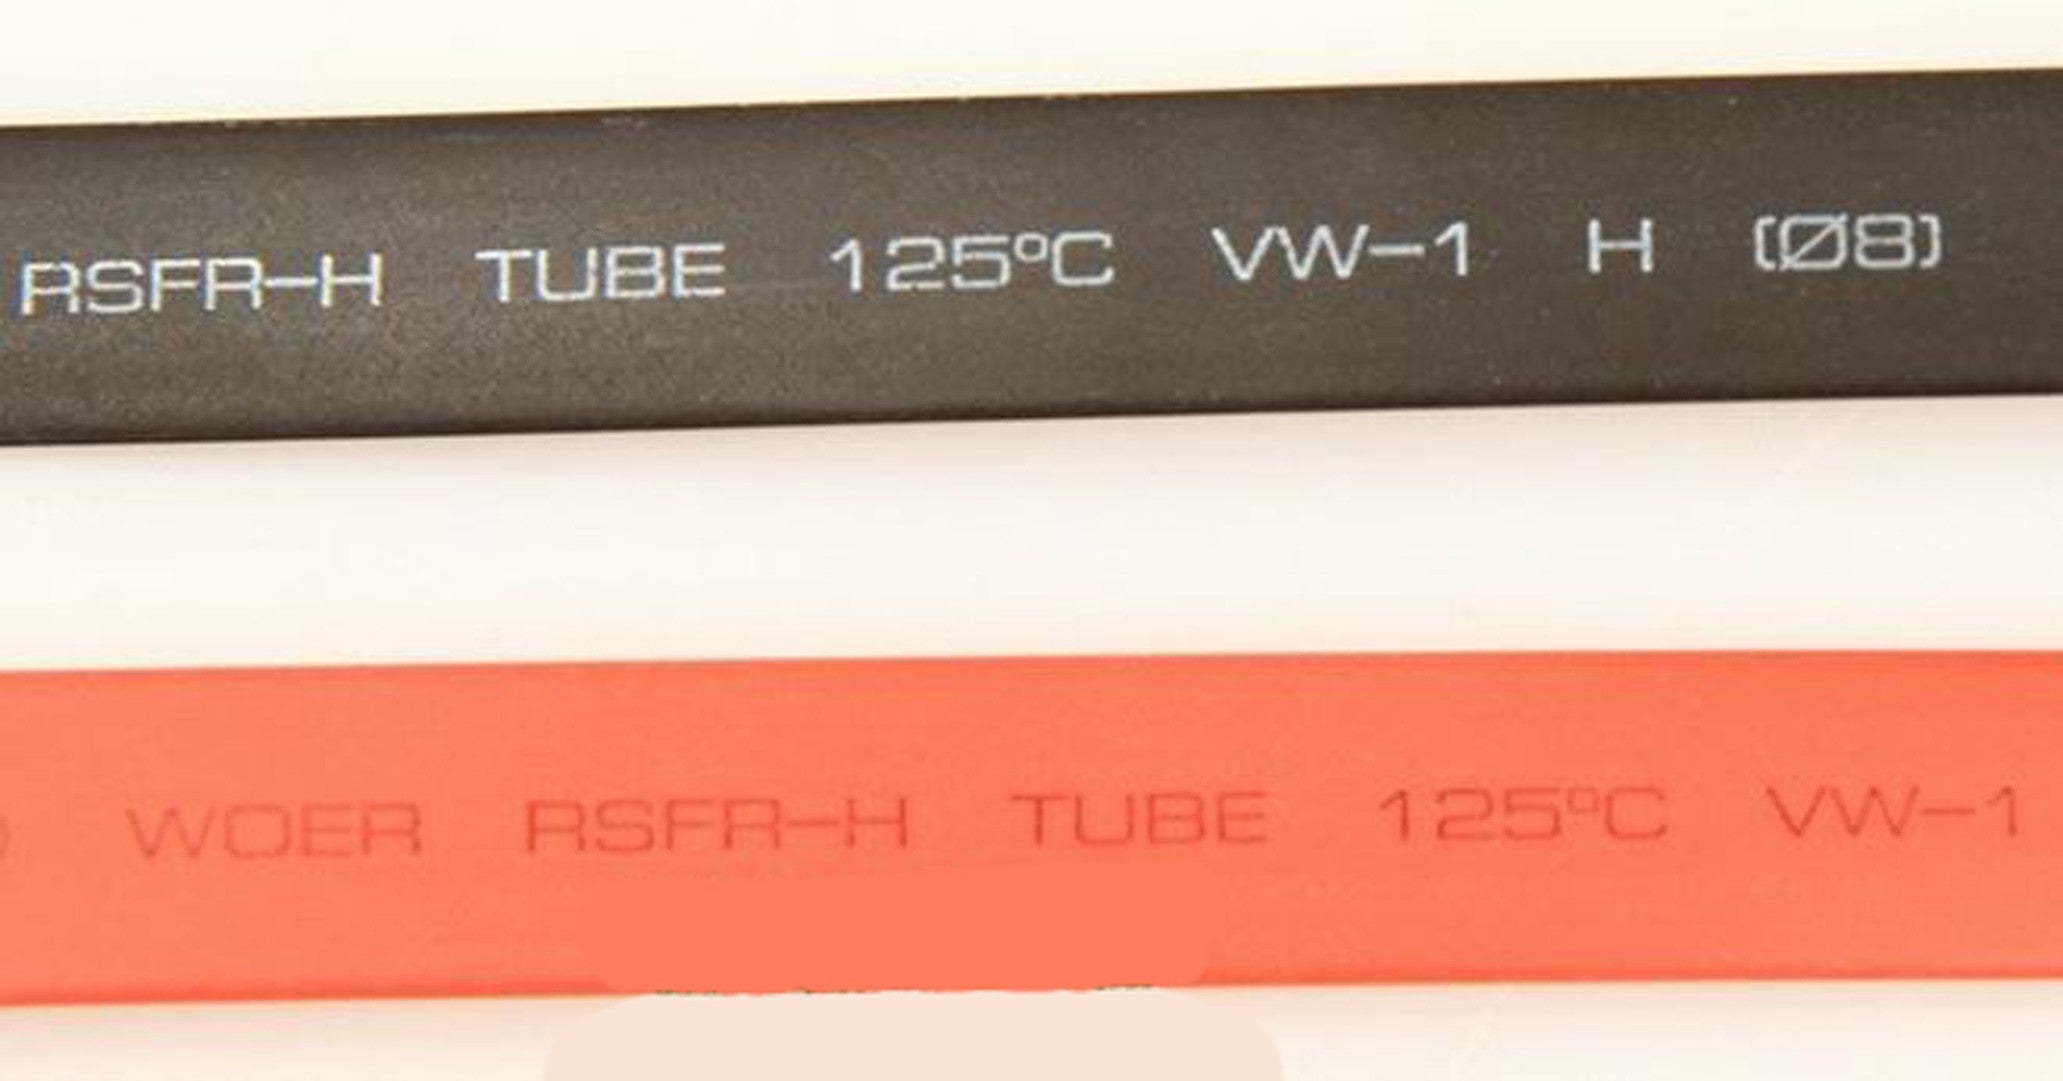 FRC1309: 8mm Heat Shrink Tubes - 3FT